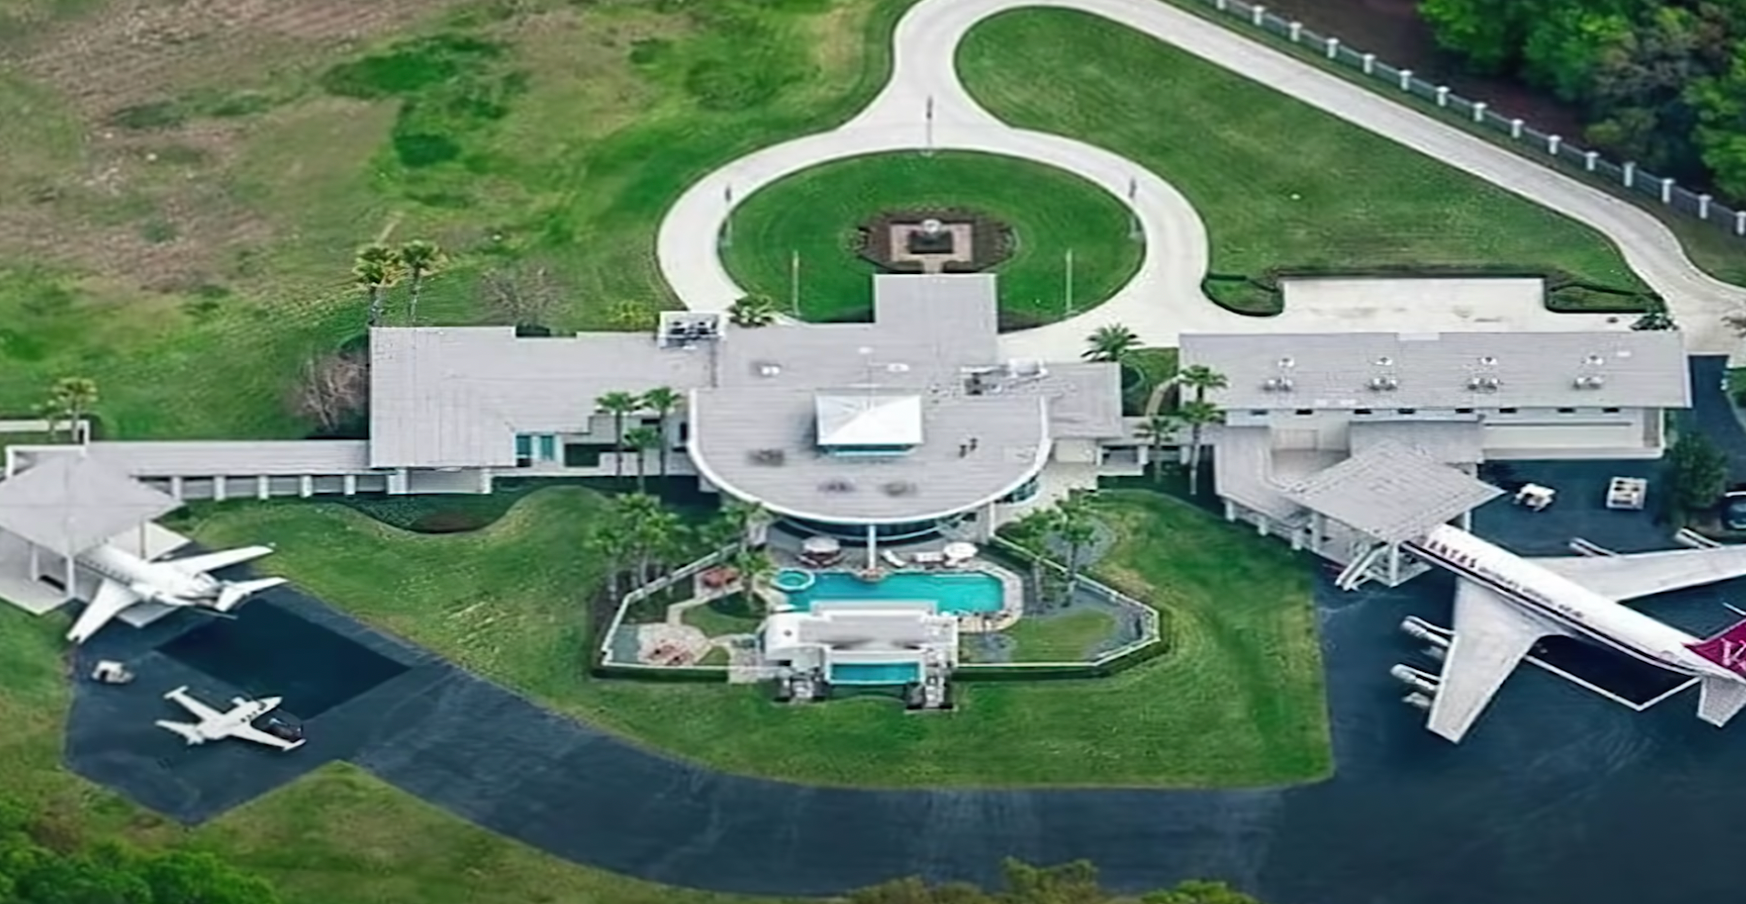 Vista aérea de la casa de John Travolta en Florida | Foto: YouTube/The Richest